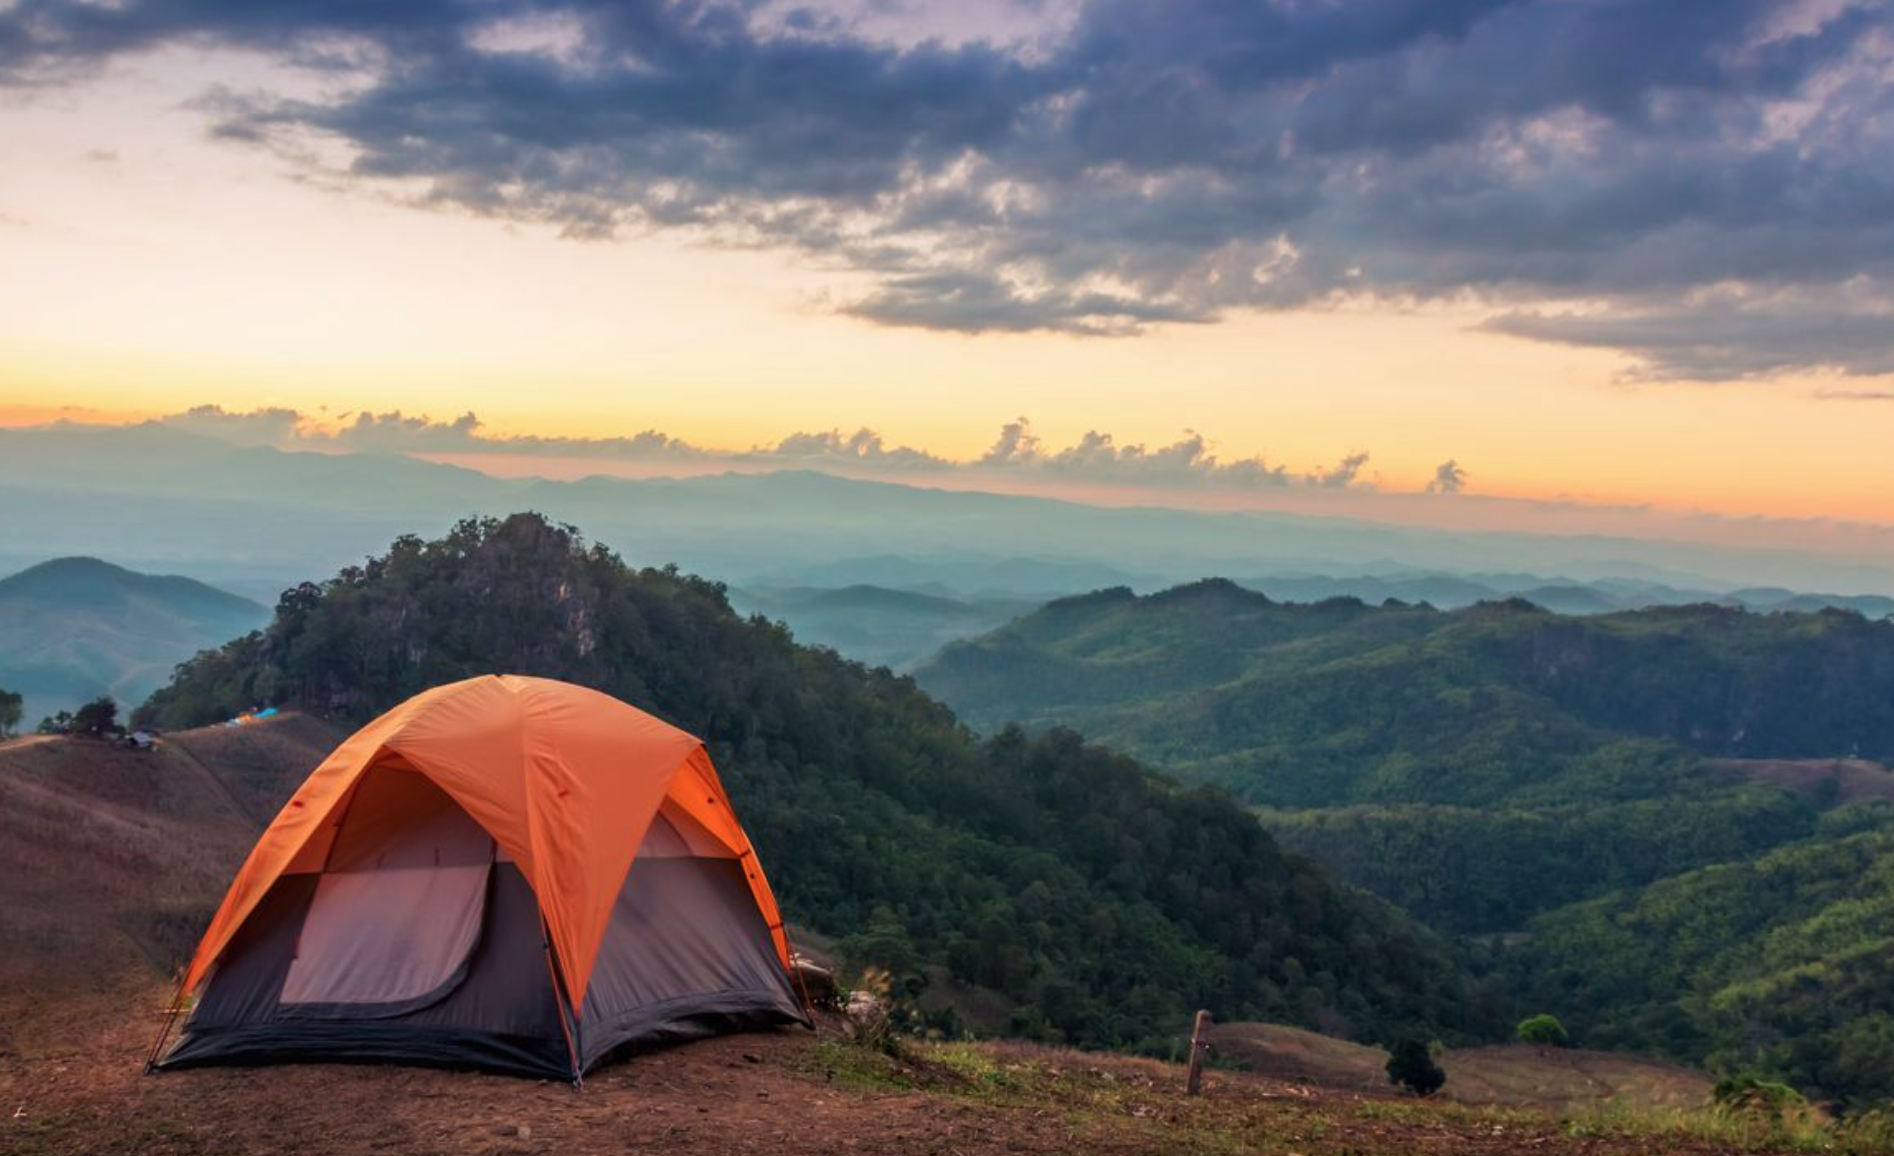 When we go camping. Палатка Camping Tent. Кемпинг West Camp. Палатка в горах. Красивый вид из палатки.